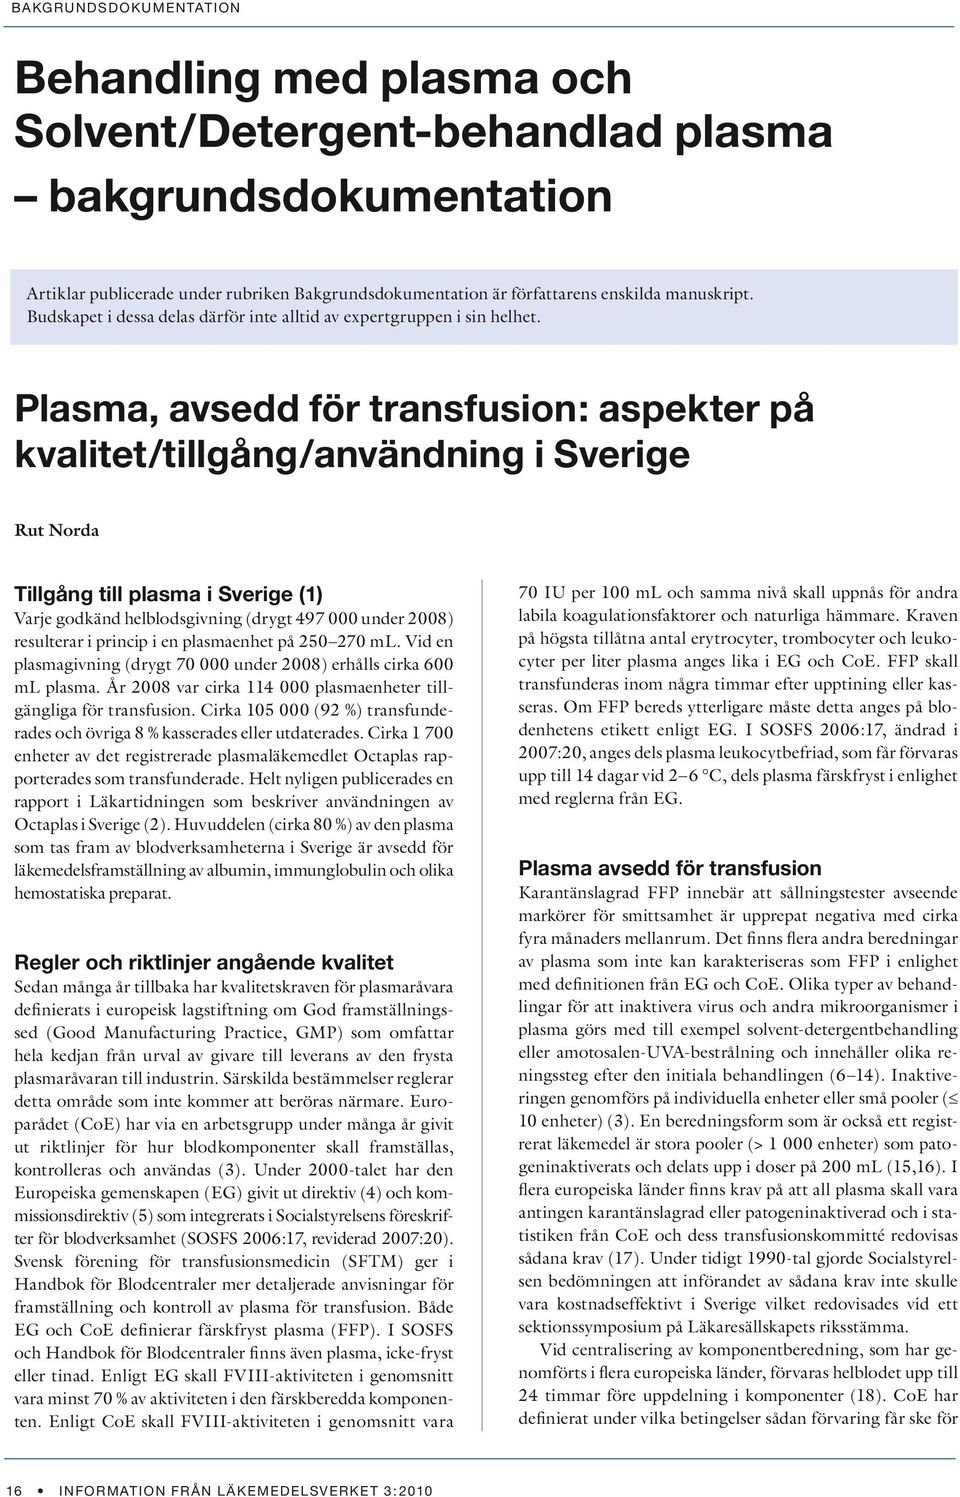 Plasma, avsedd för transfusion: aspekter på kvalitet/tillgång/användning i Sverige Rut Norda Tillgång till plasma i Sverige (1) Varje godkänd helblodsgivning (drygt 497 000 under 2008) resulterar i